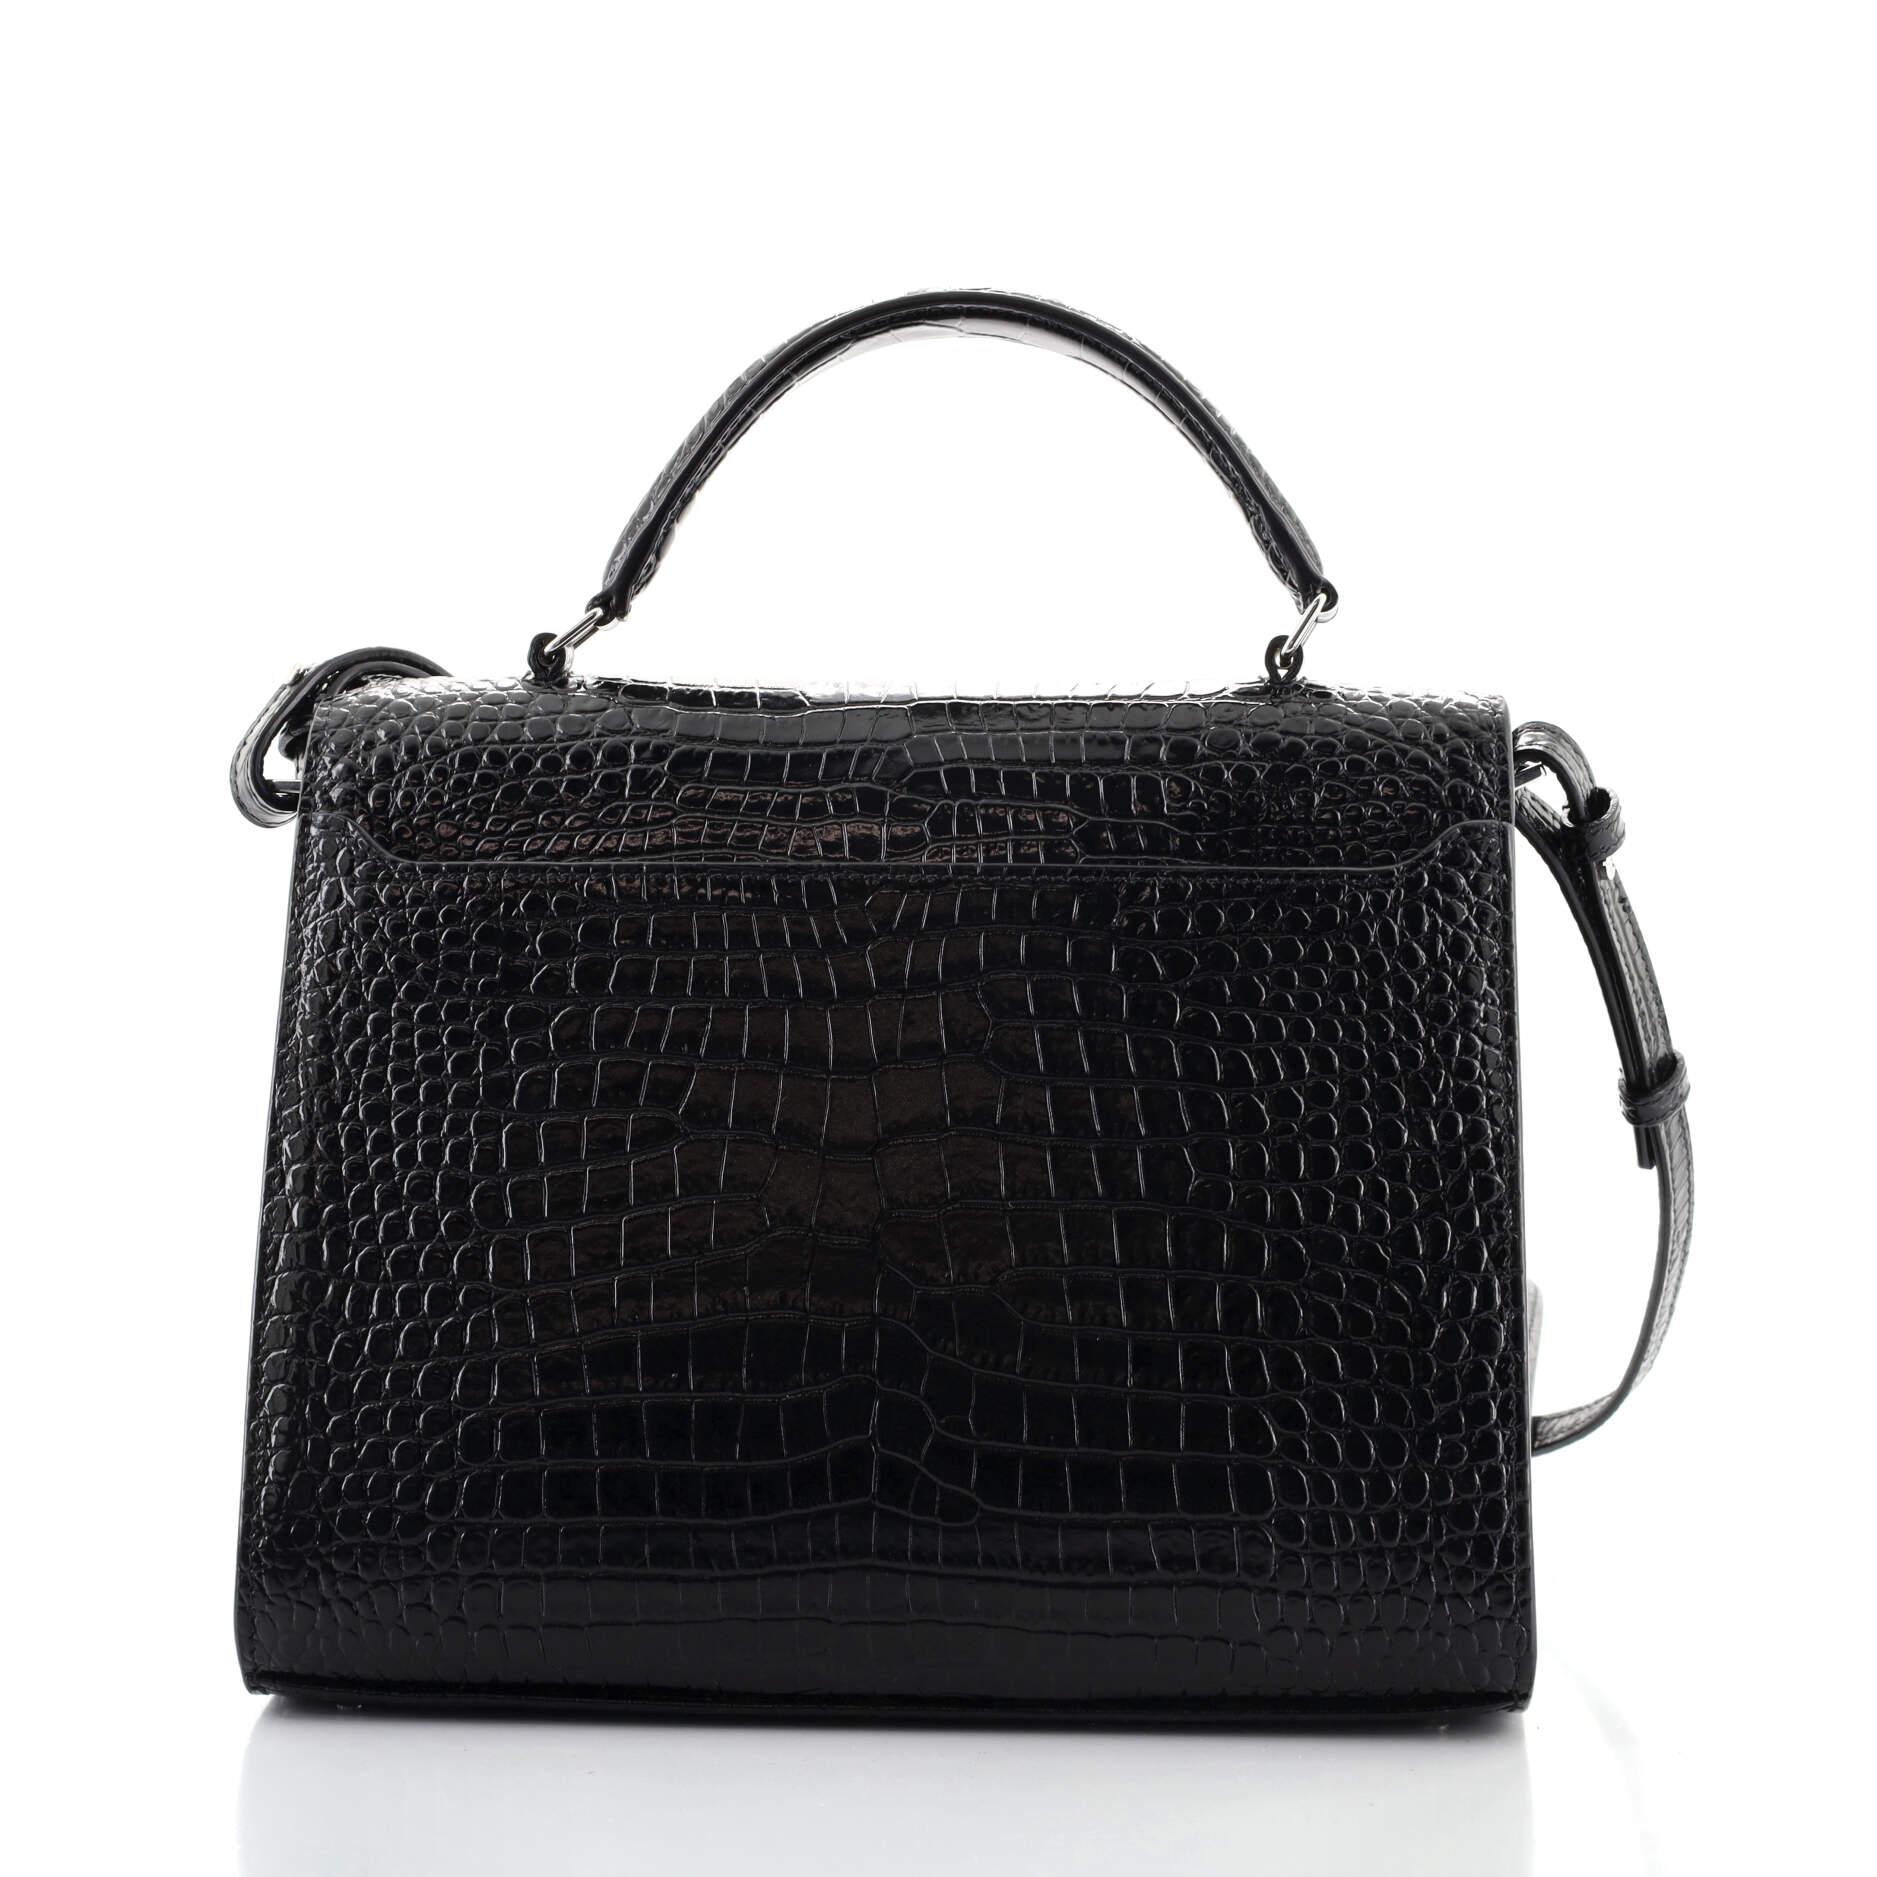 Black Saint Laurent Cassandra Top Handle Bag Crocodile Embossed Leather Medium